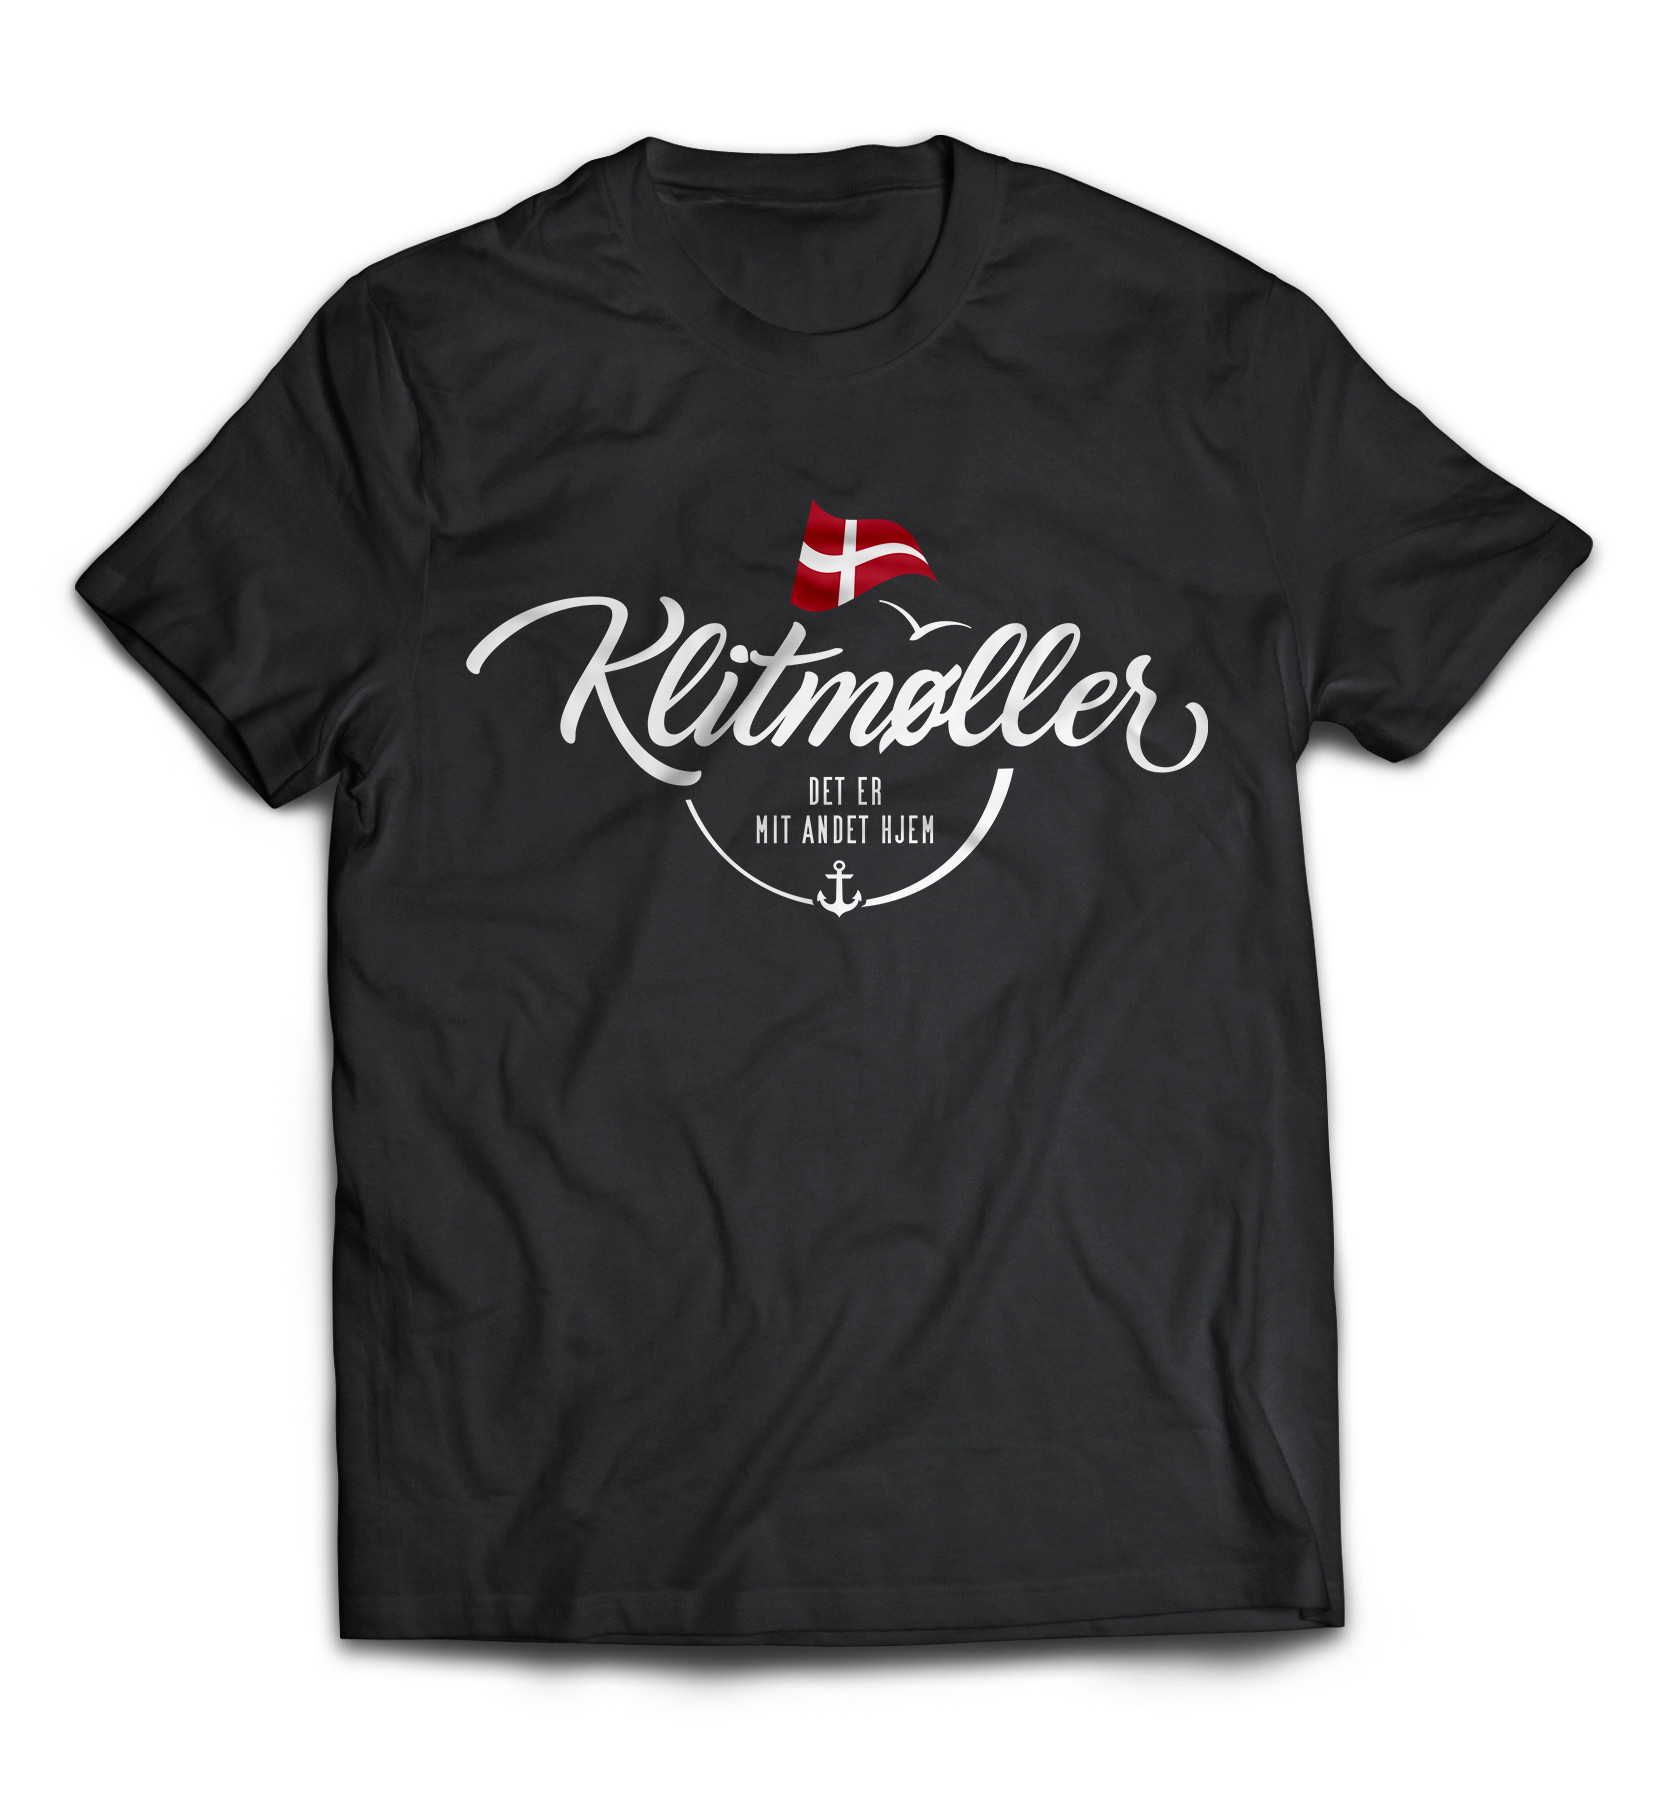 Dänemark - Meine zweite Heimat - T-Shirt "Klitmøller"